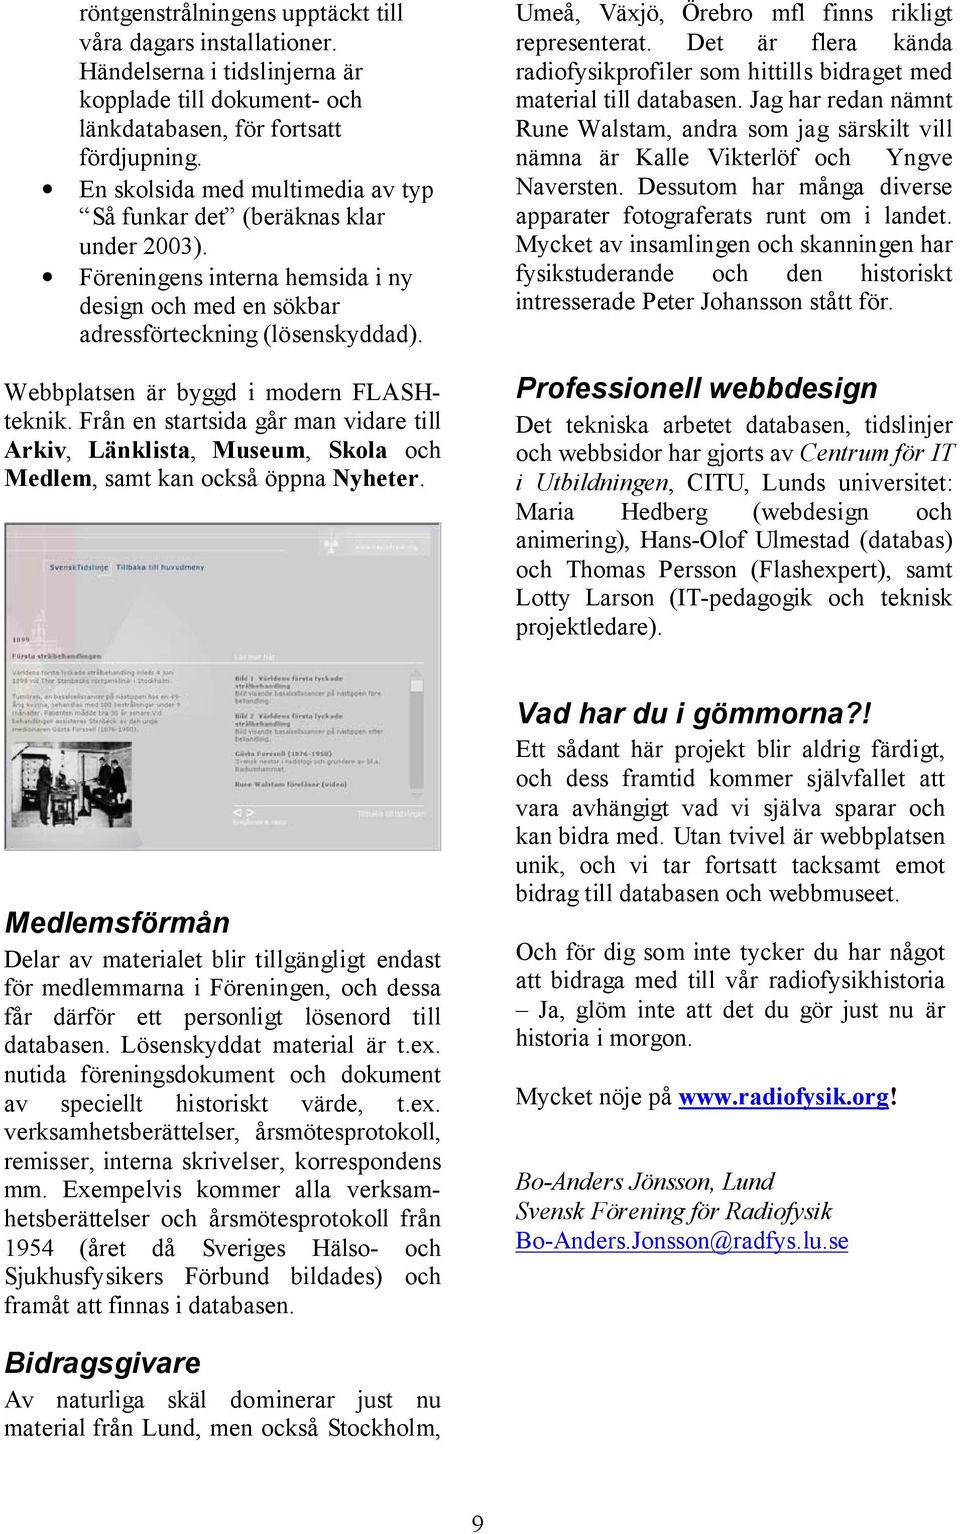 Webbplatsen är byggd i modern FLASHteknik. Från en startsida går man vidare till Arkiv, Länklista, Museum, Skola och Medlem, samt kan också öppna Nyheter.